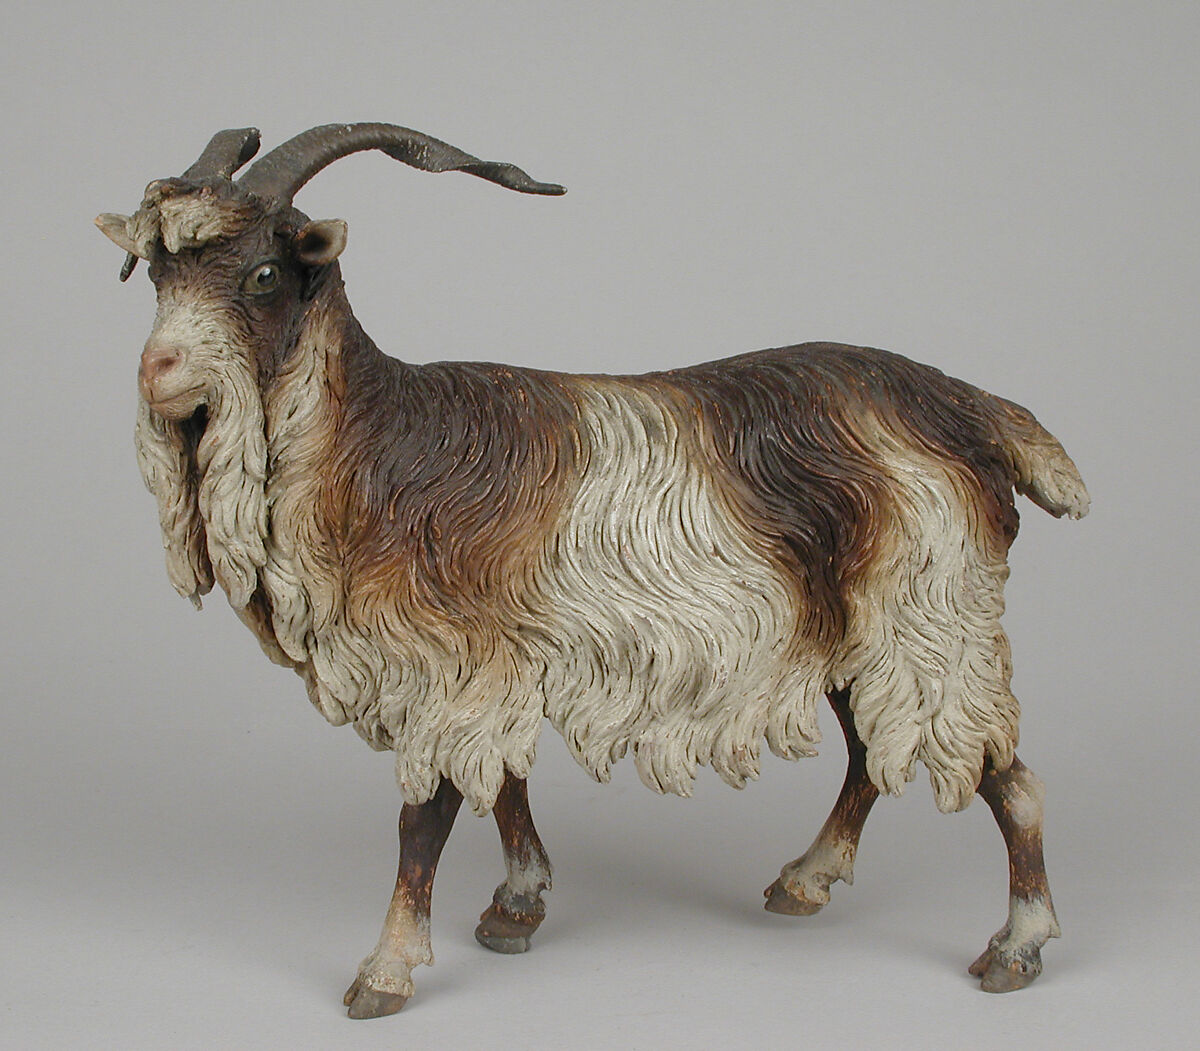 Male adult goat, Polychromed terracotta body, wooden legs, metal horns, Italian, Naples